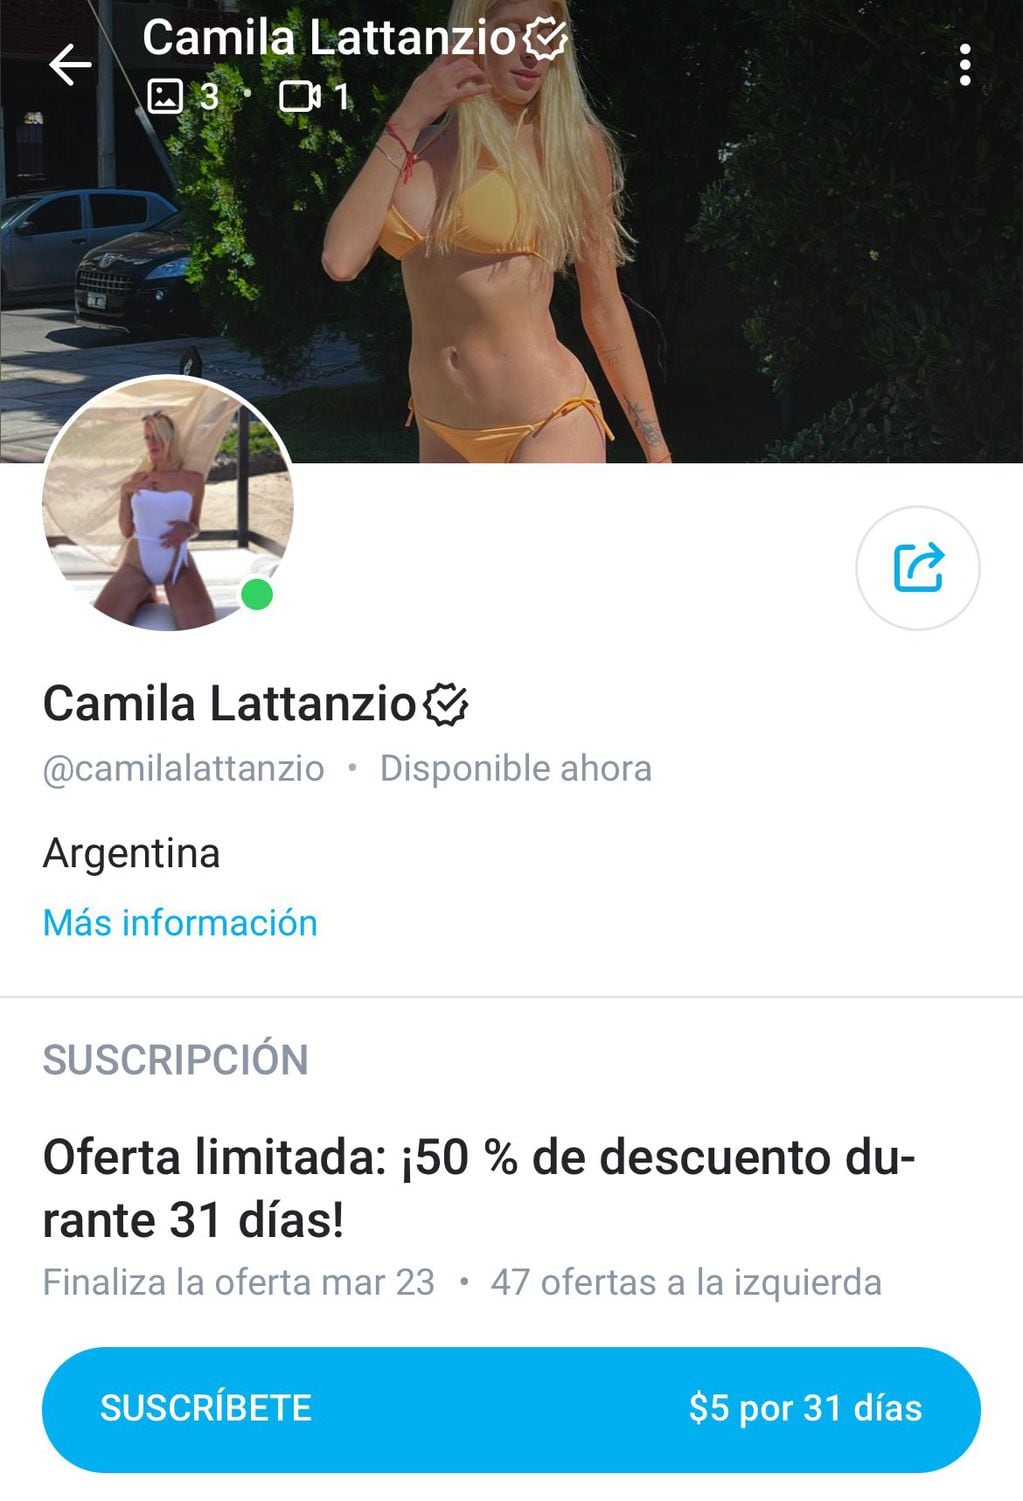 Camila Lattanzio contó que se sumó a OnlyFans